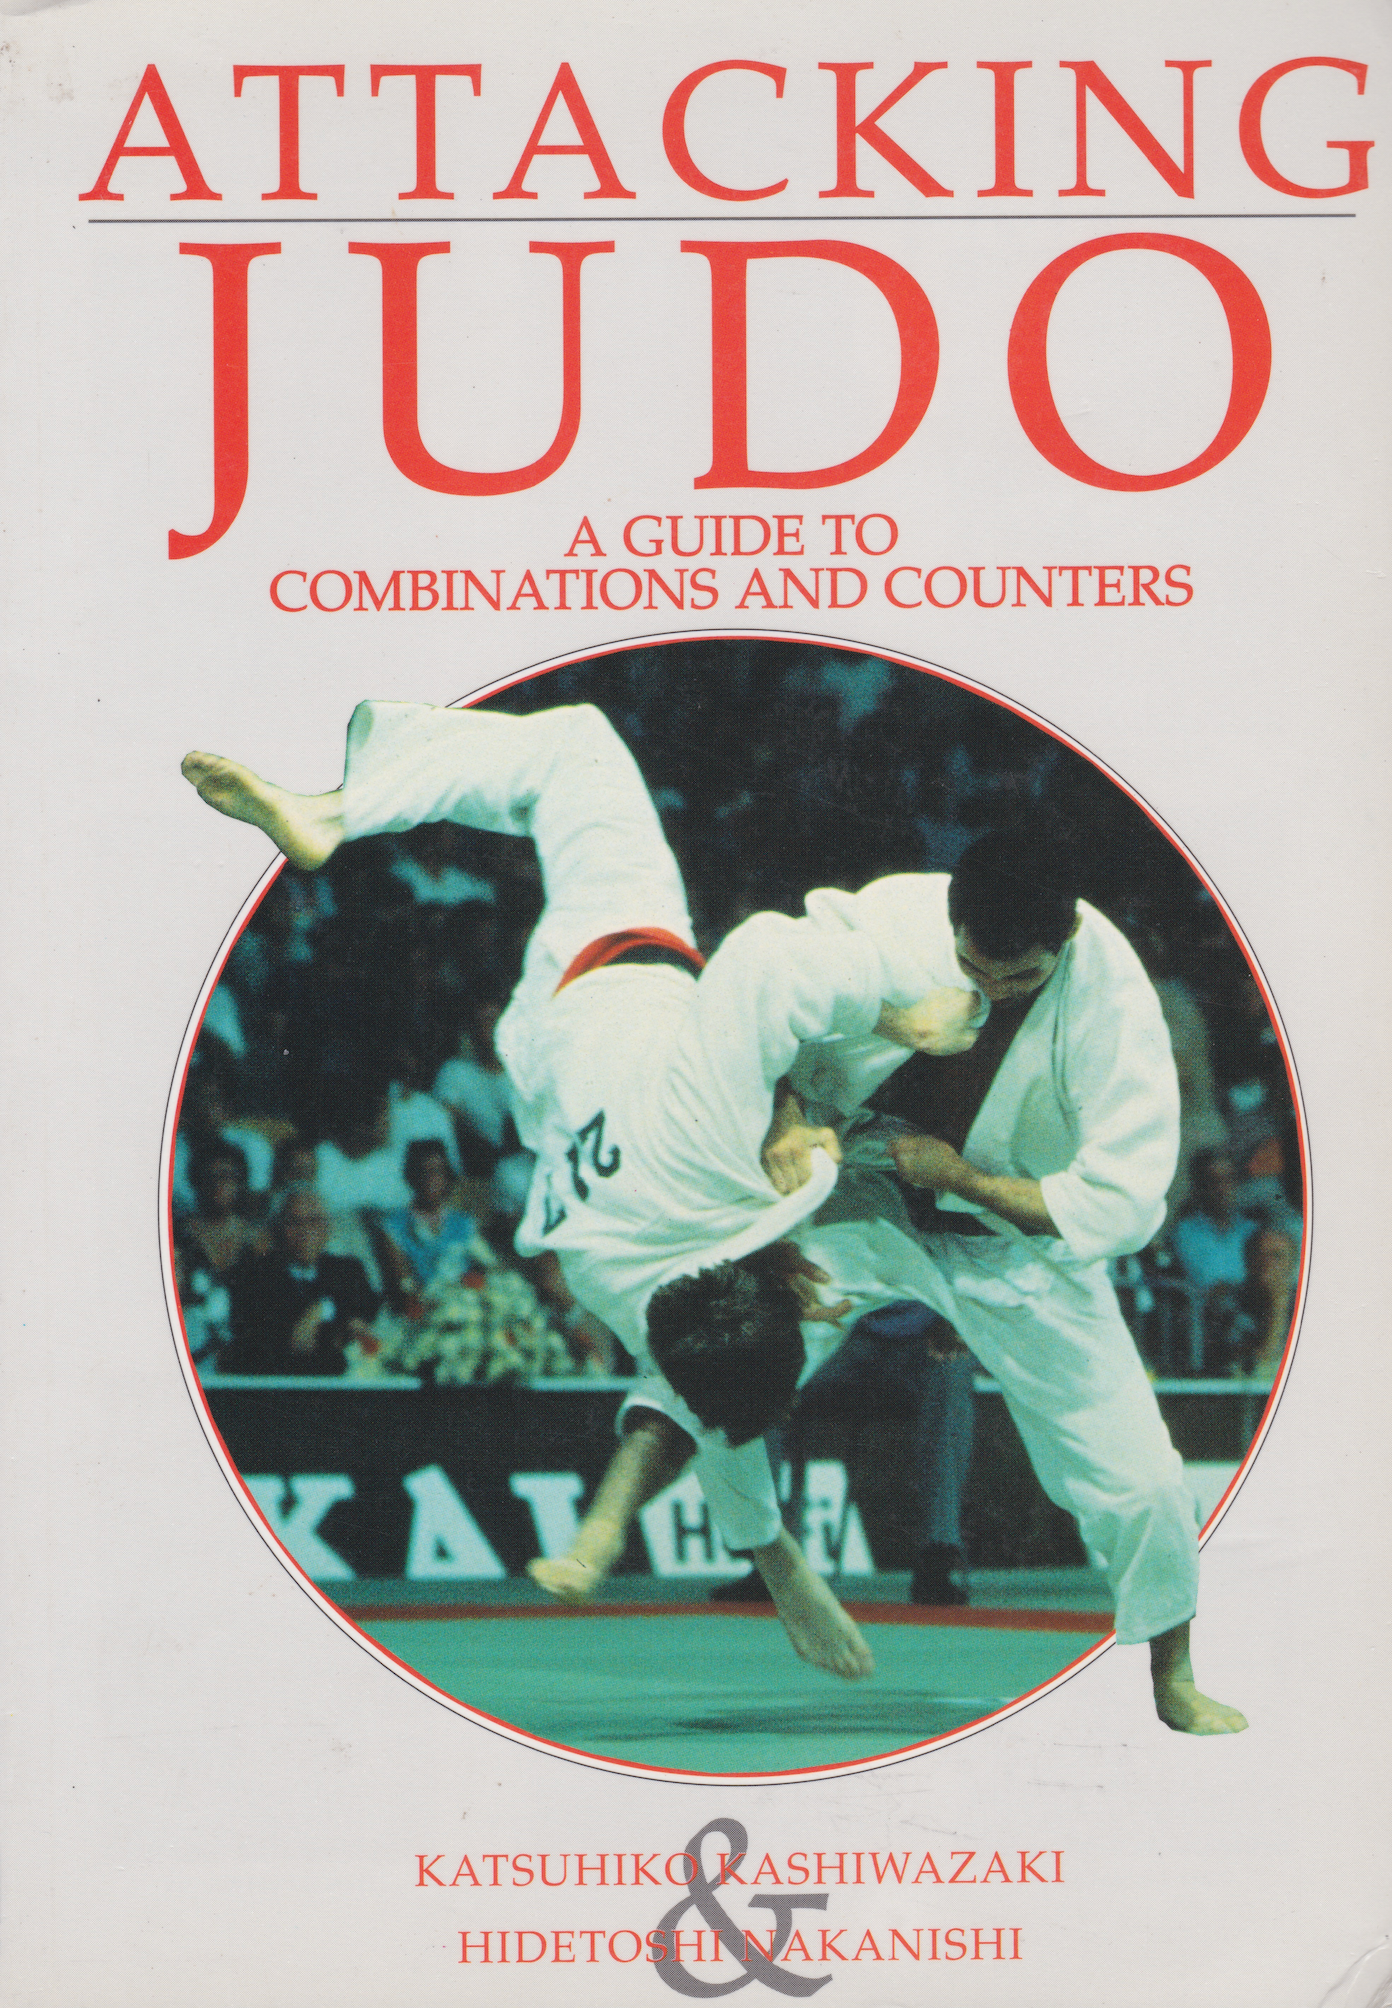 Judo de ataque: una guía de combinaciones y contraataques por Katsuhiko Kashiwazaki y Hidetoshi Nakanishi (usado) 